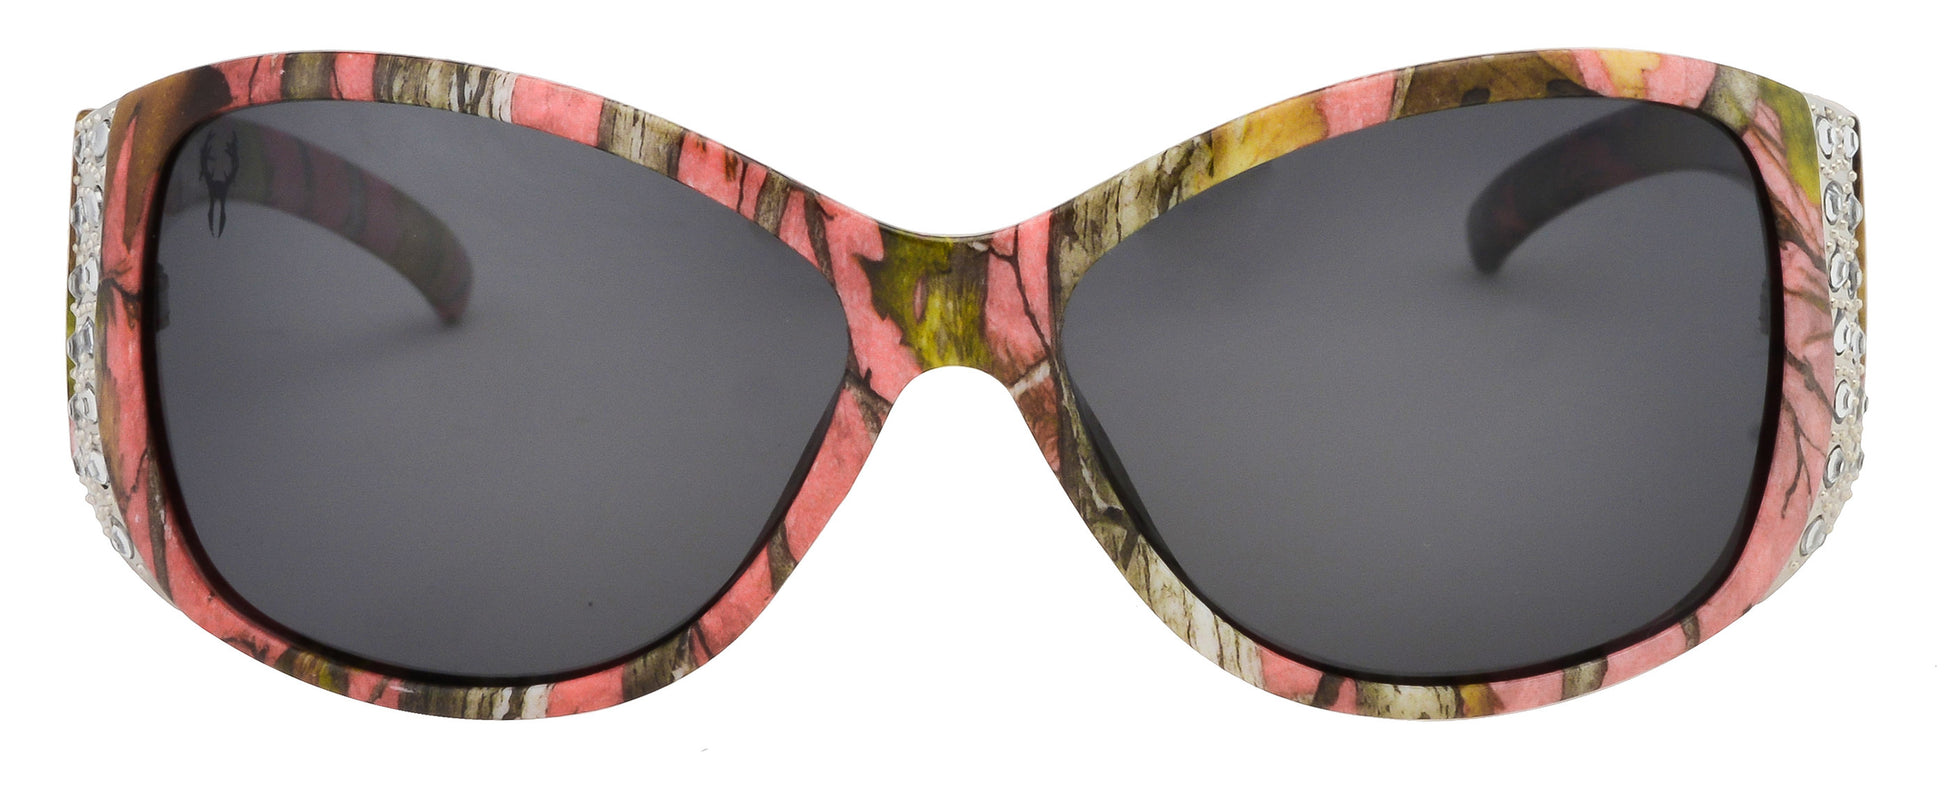 Third image: Hornz Pink Camo Polarized Sunglasses for Women - Pink Camo Frame - Smoke Lens